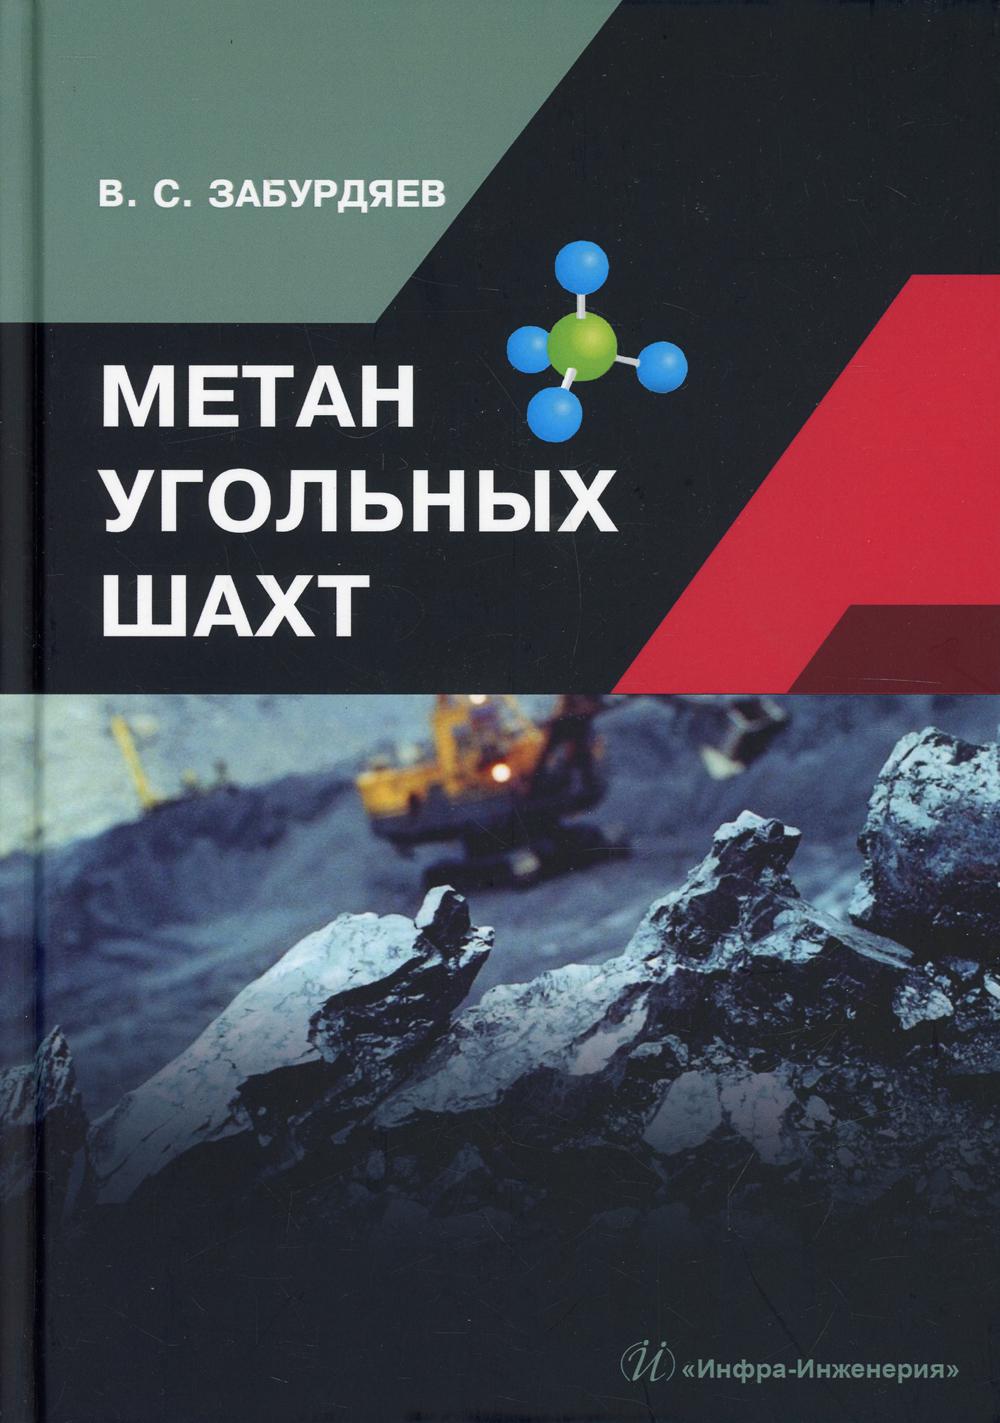 фото Книга метан угольных шахт инфра-инженерия